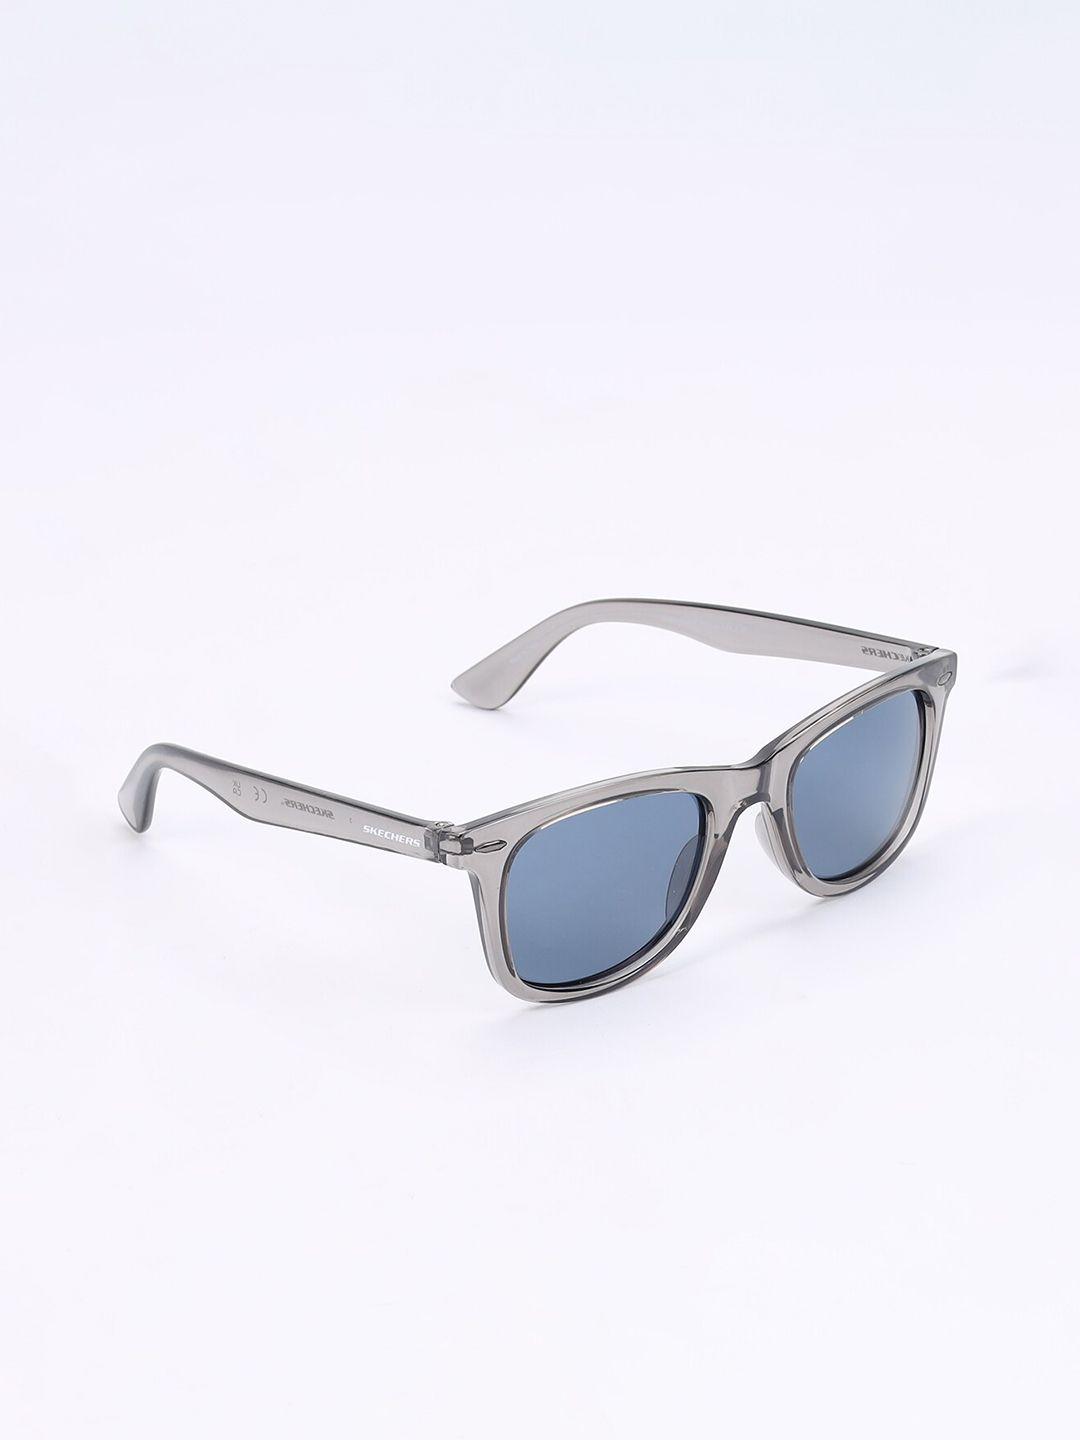 skechers men wayfarer sunglasses with uv protected lens -se8097 51 20